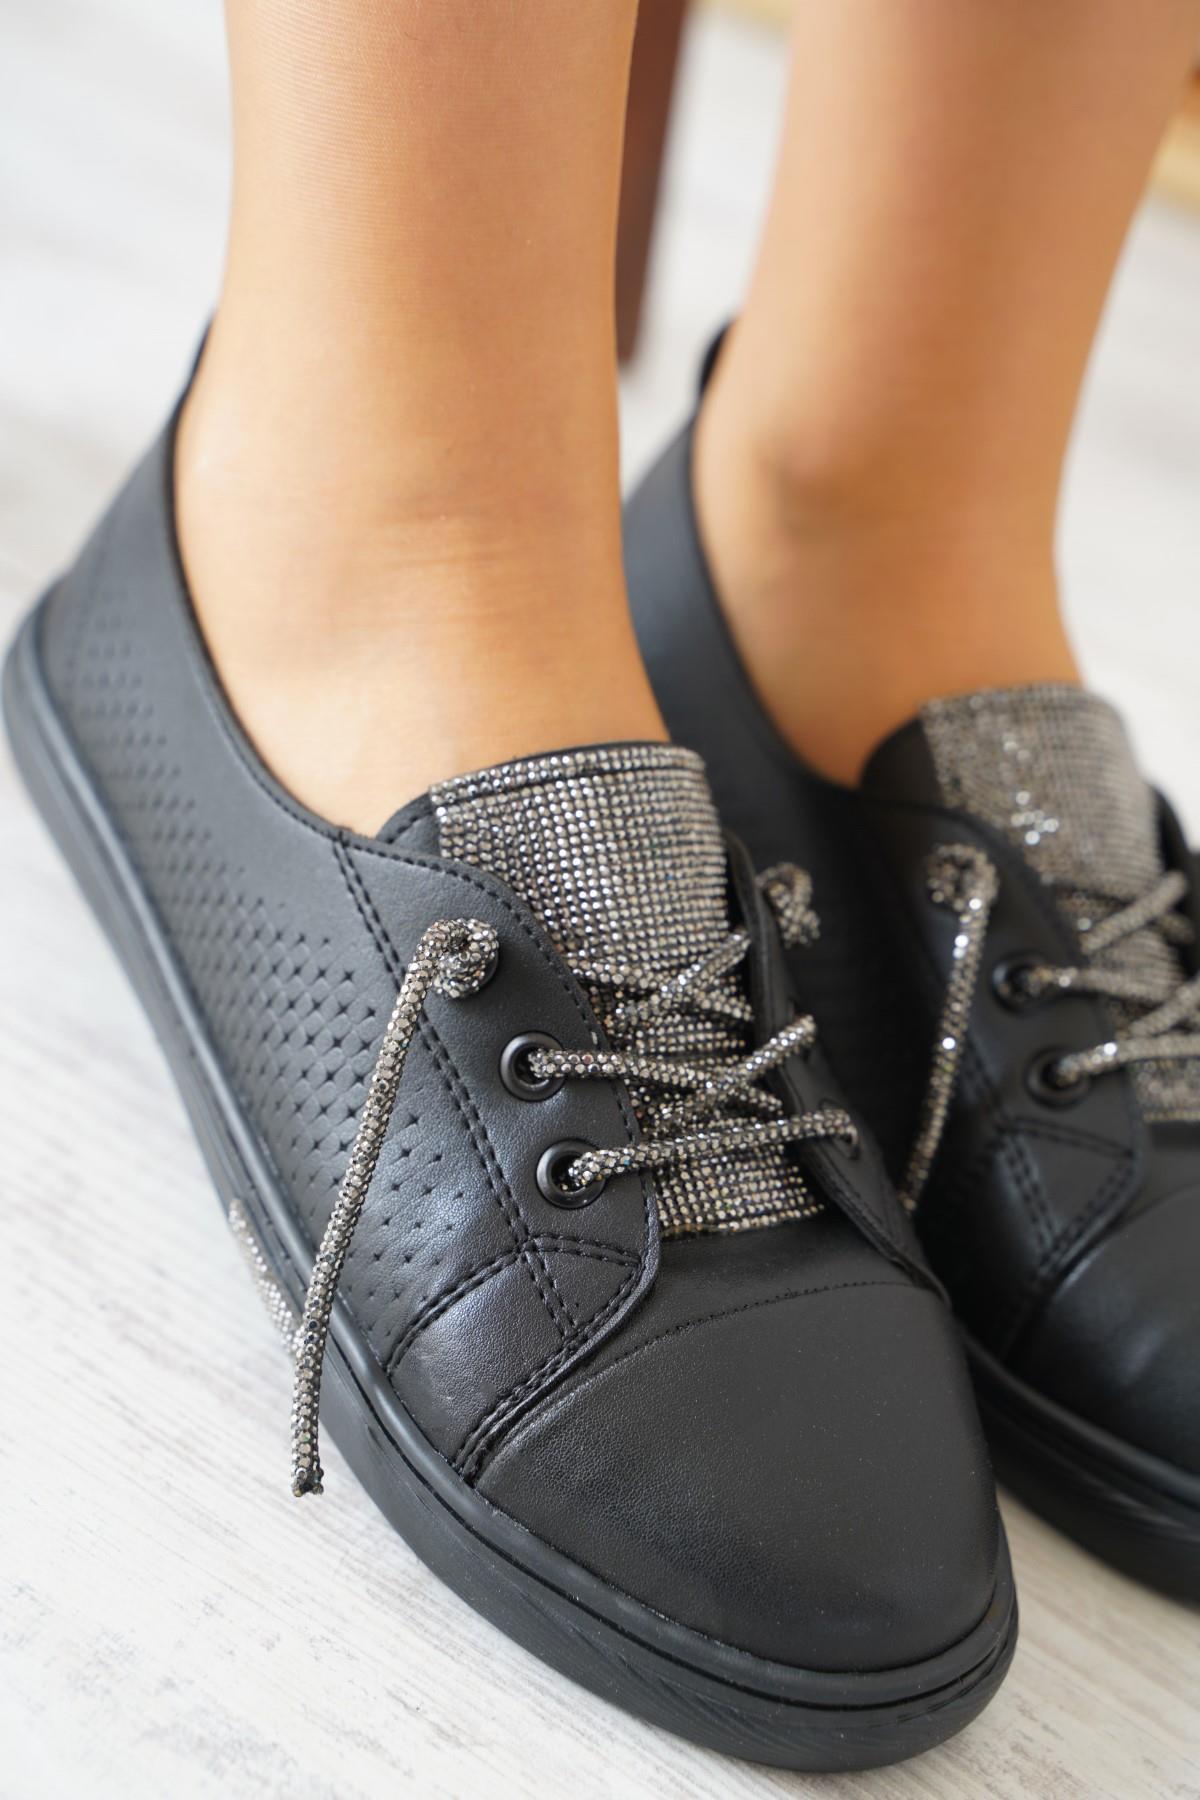 Liinge Dil Taşlı Kadın Spor Ayakkabı Siyah Cilt